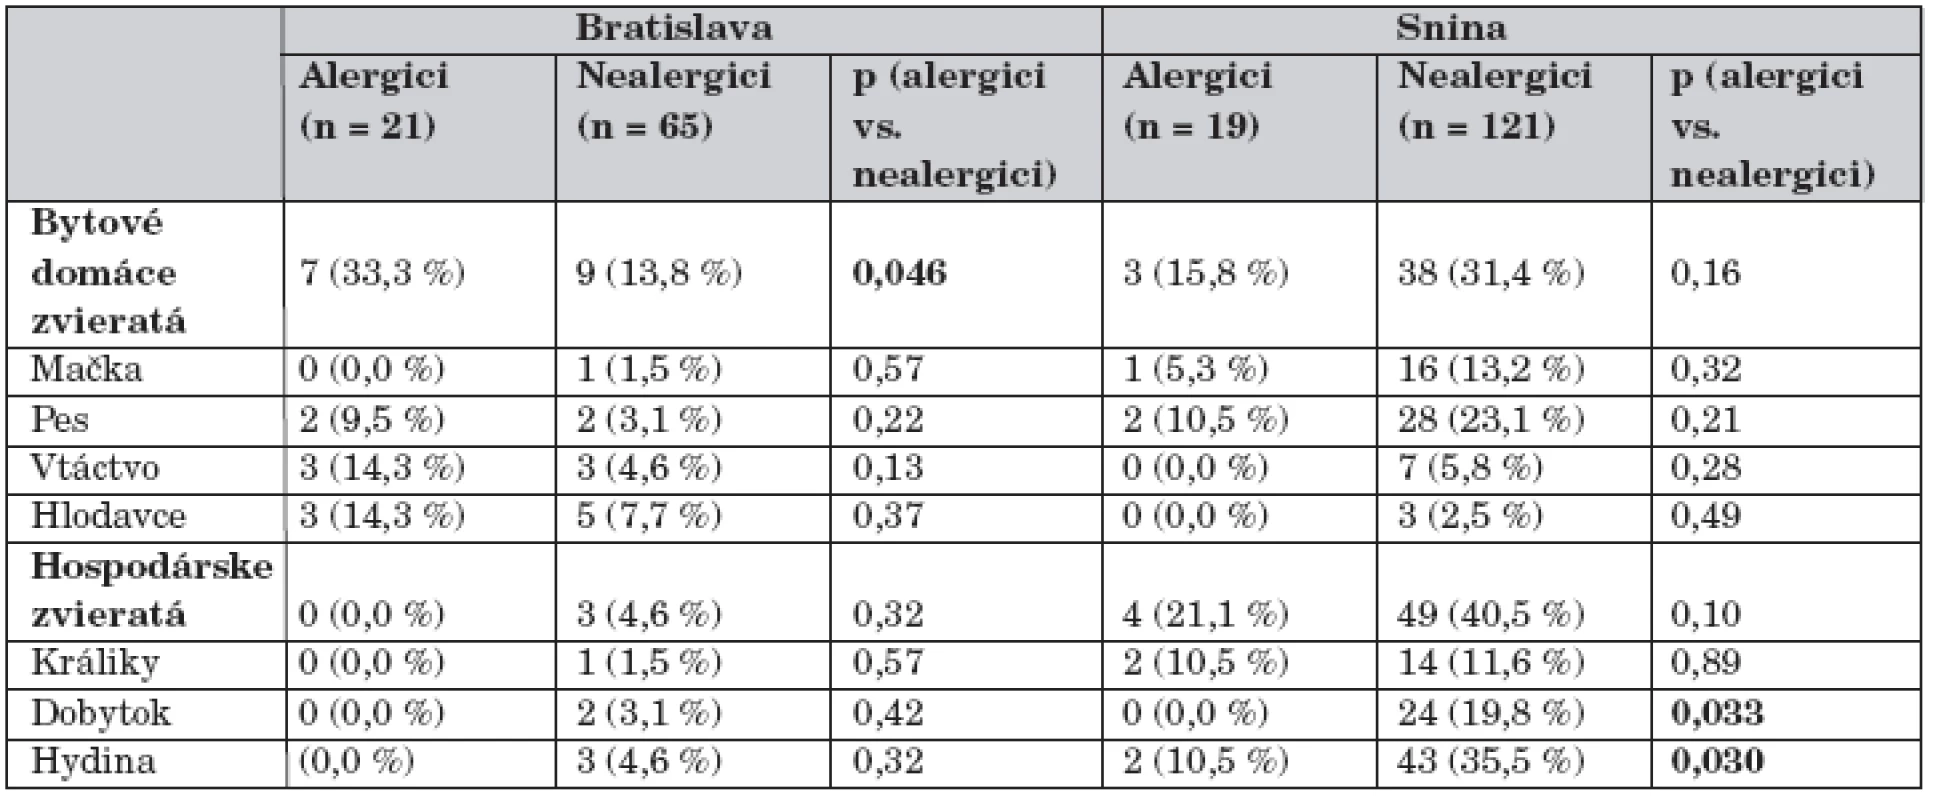 Kontakt alergikov a nealergikov s bytovými a hospodárskymi domácimi zvieratami v regiónoch
Bratislavy a Sniny.